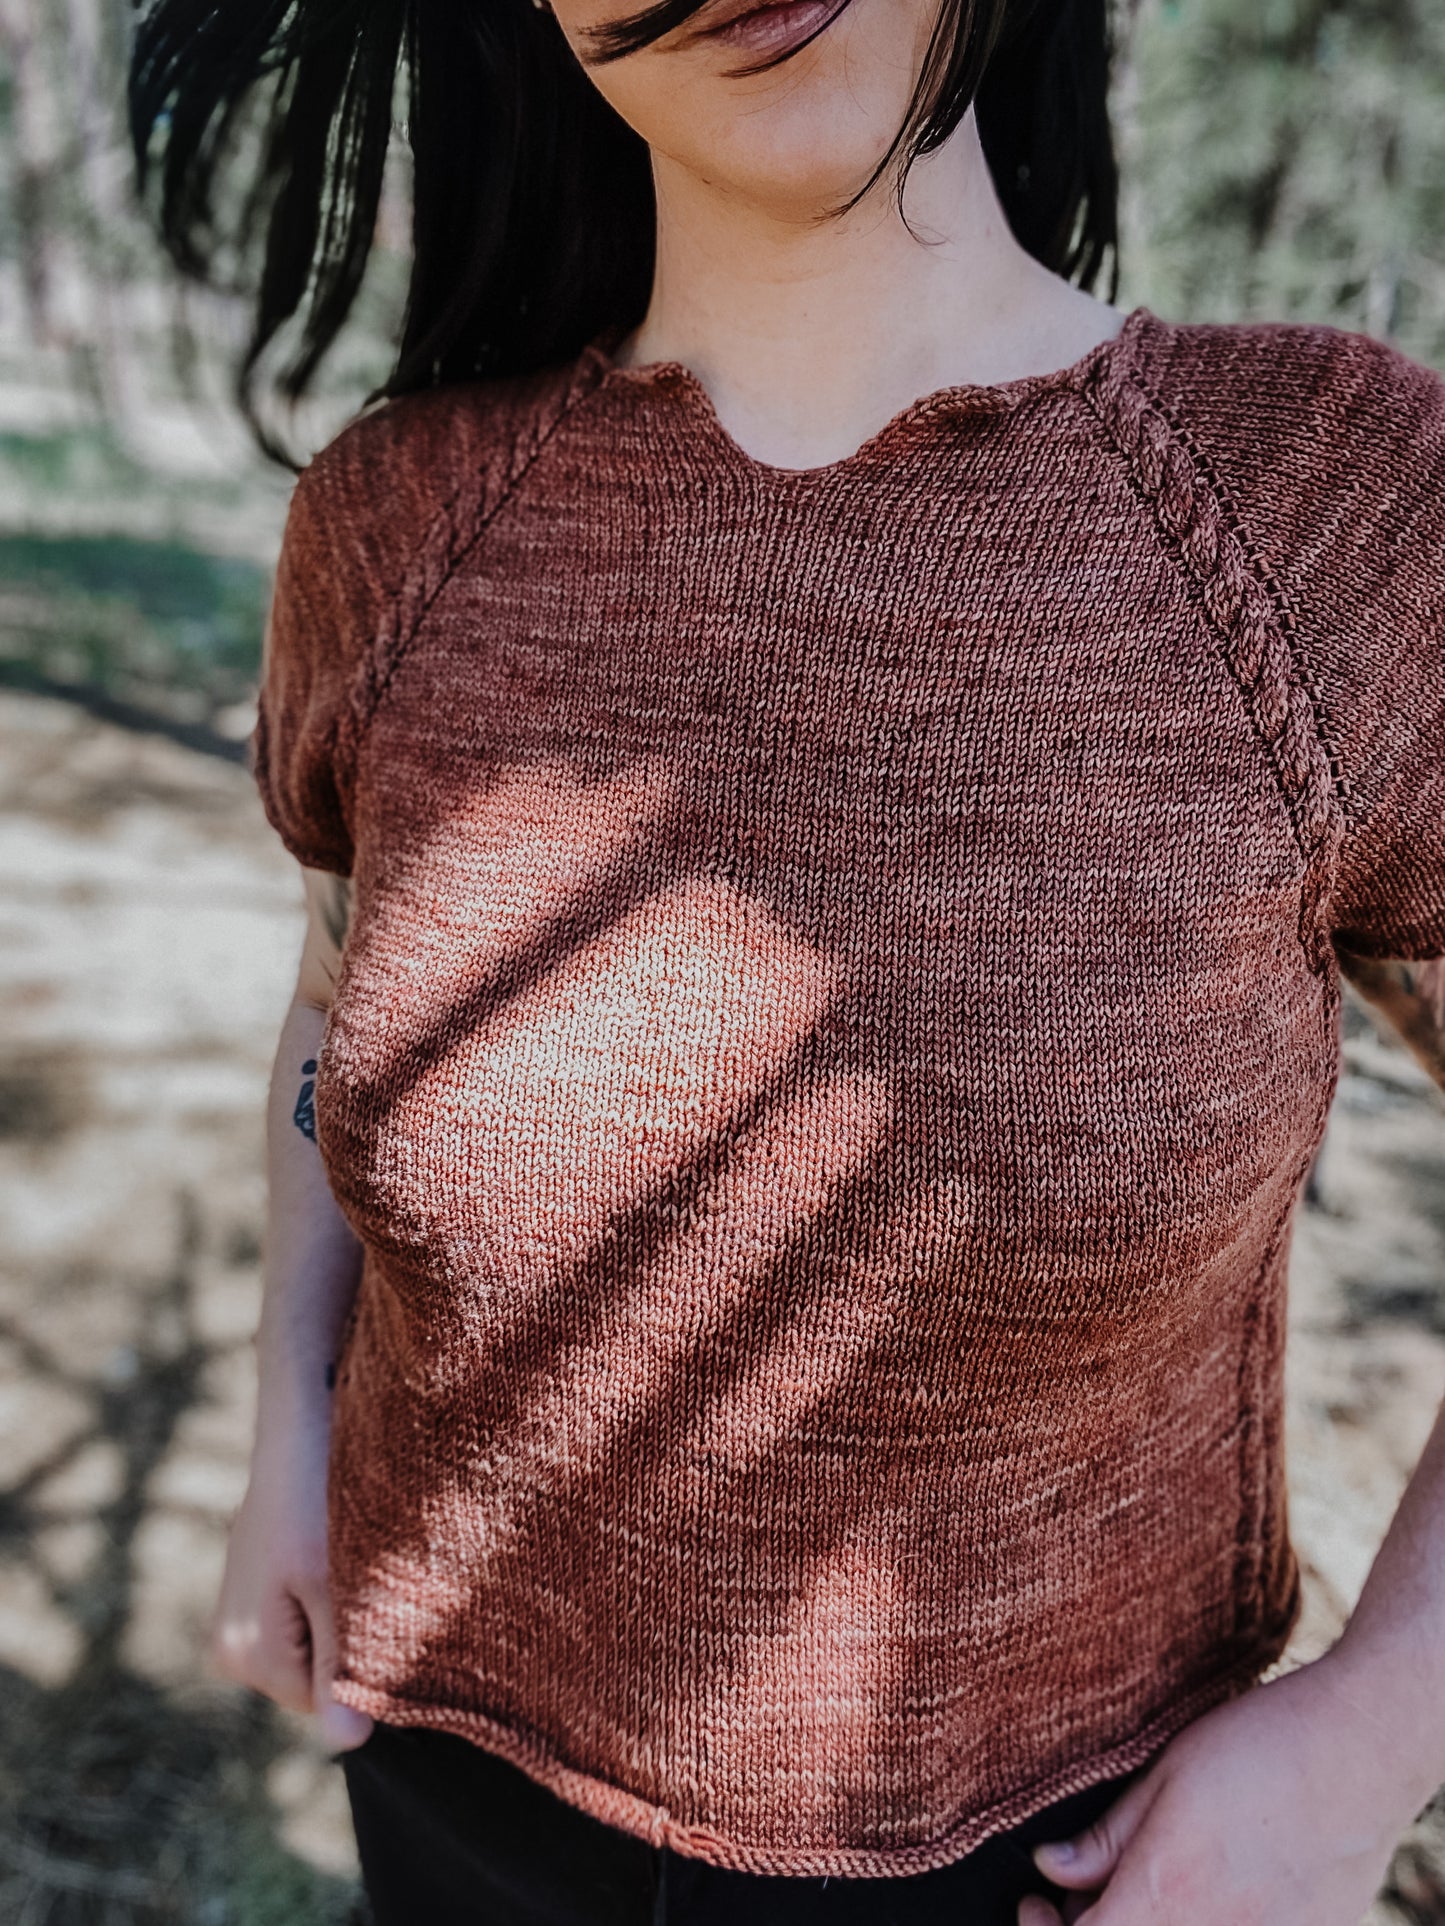 Miri Raglan - Knitting Pattern